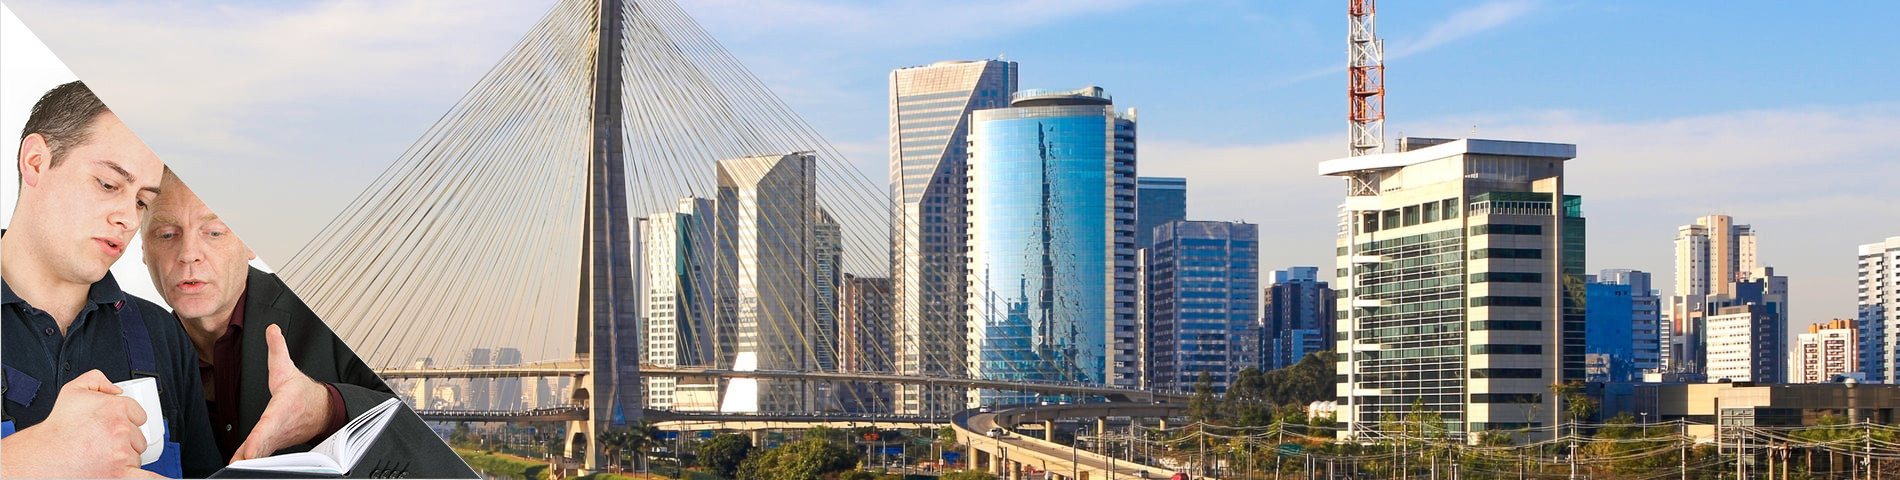 Sao Paulo - One-to-One